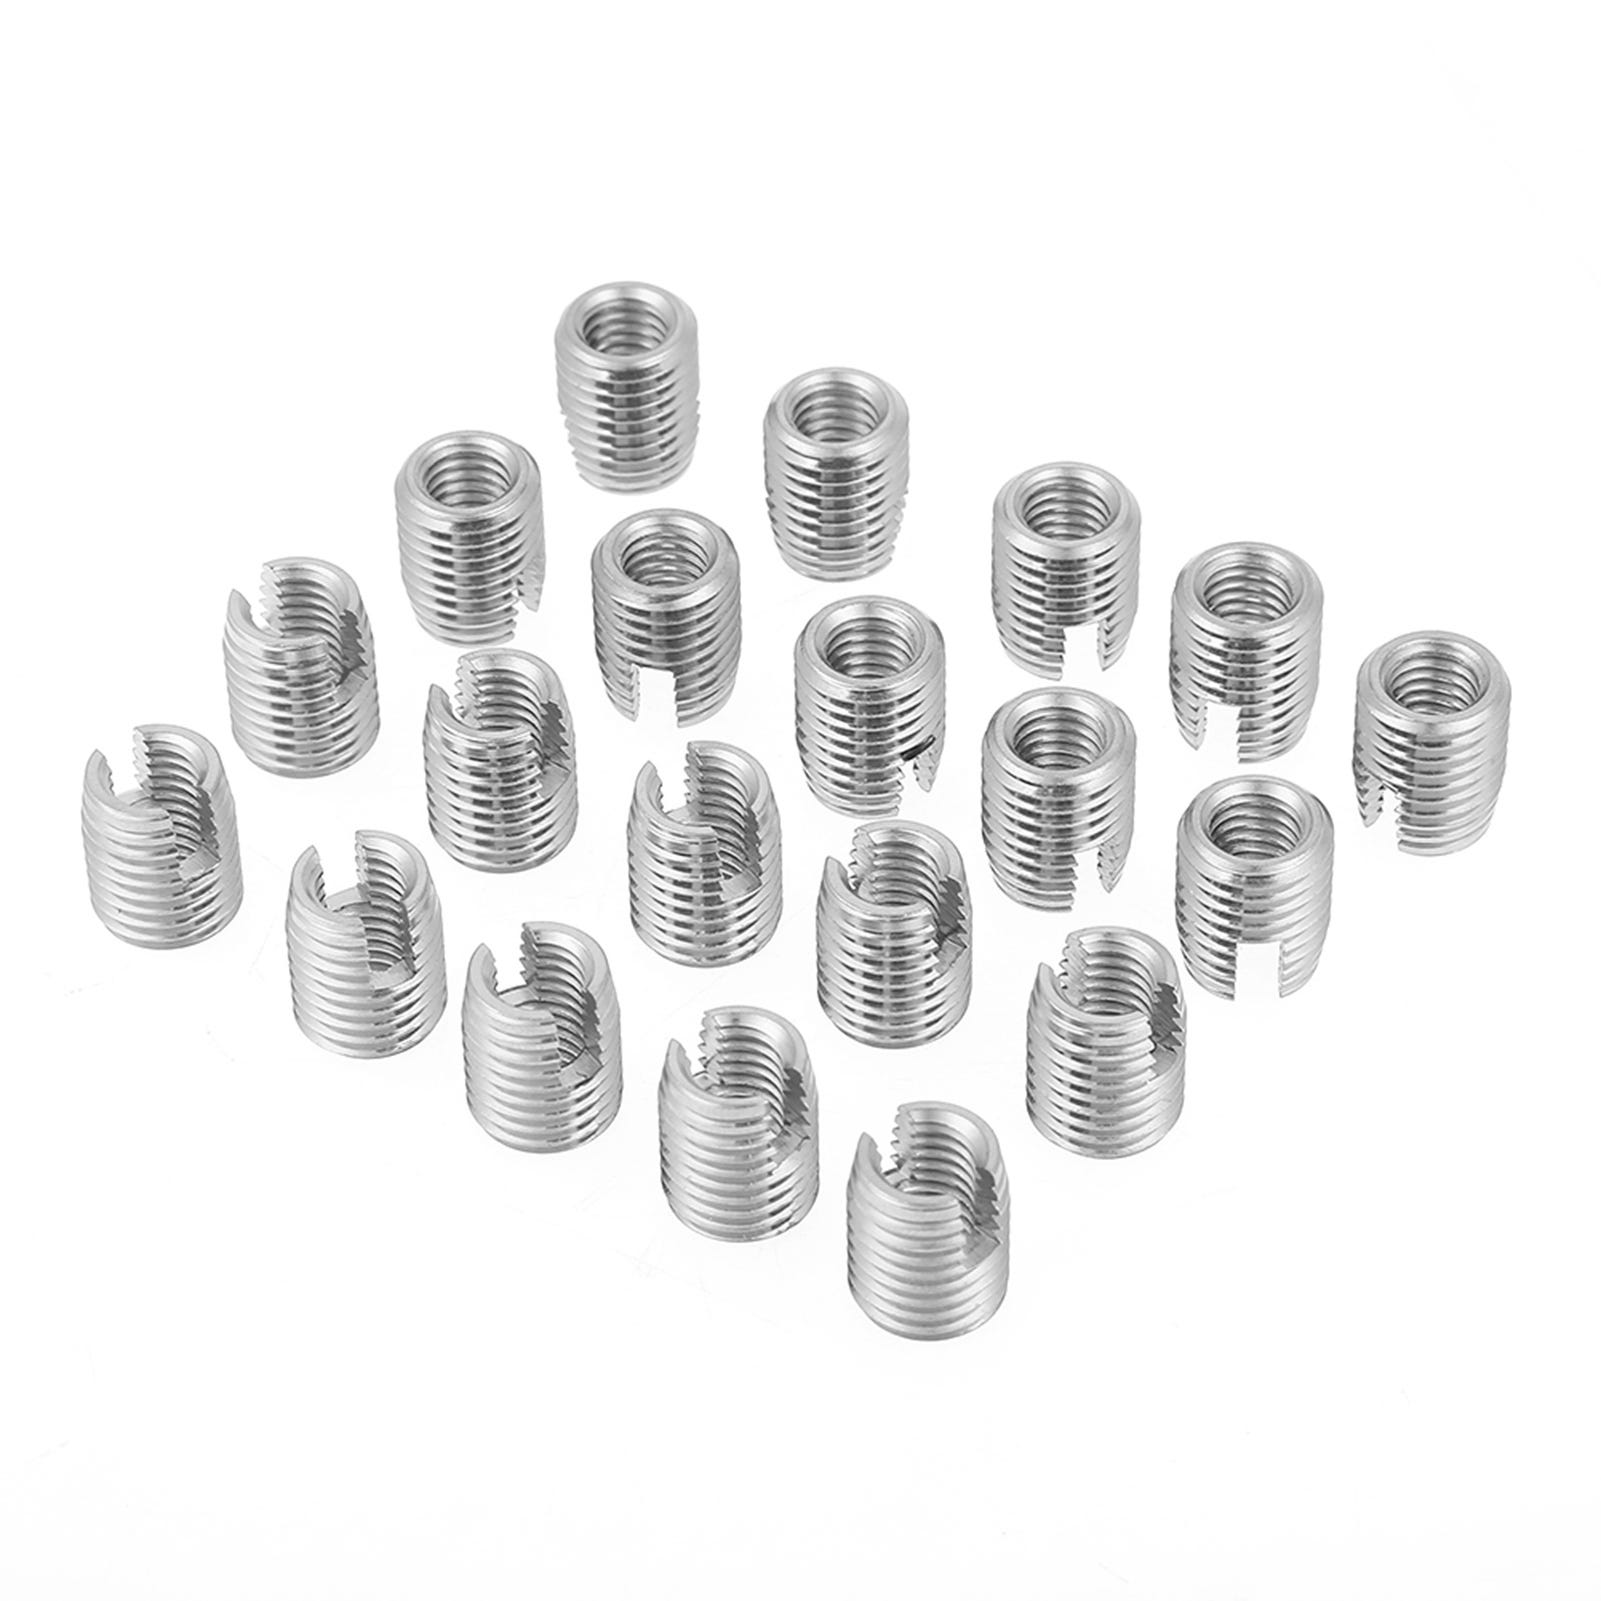 20 piezas insertos roscados de acero inoxidable sus303, m8 x 15mm